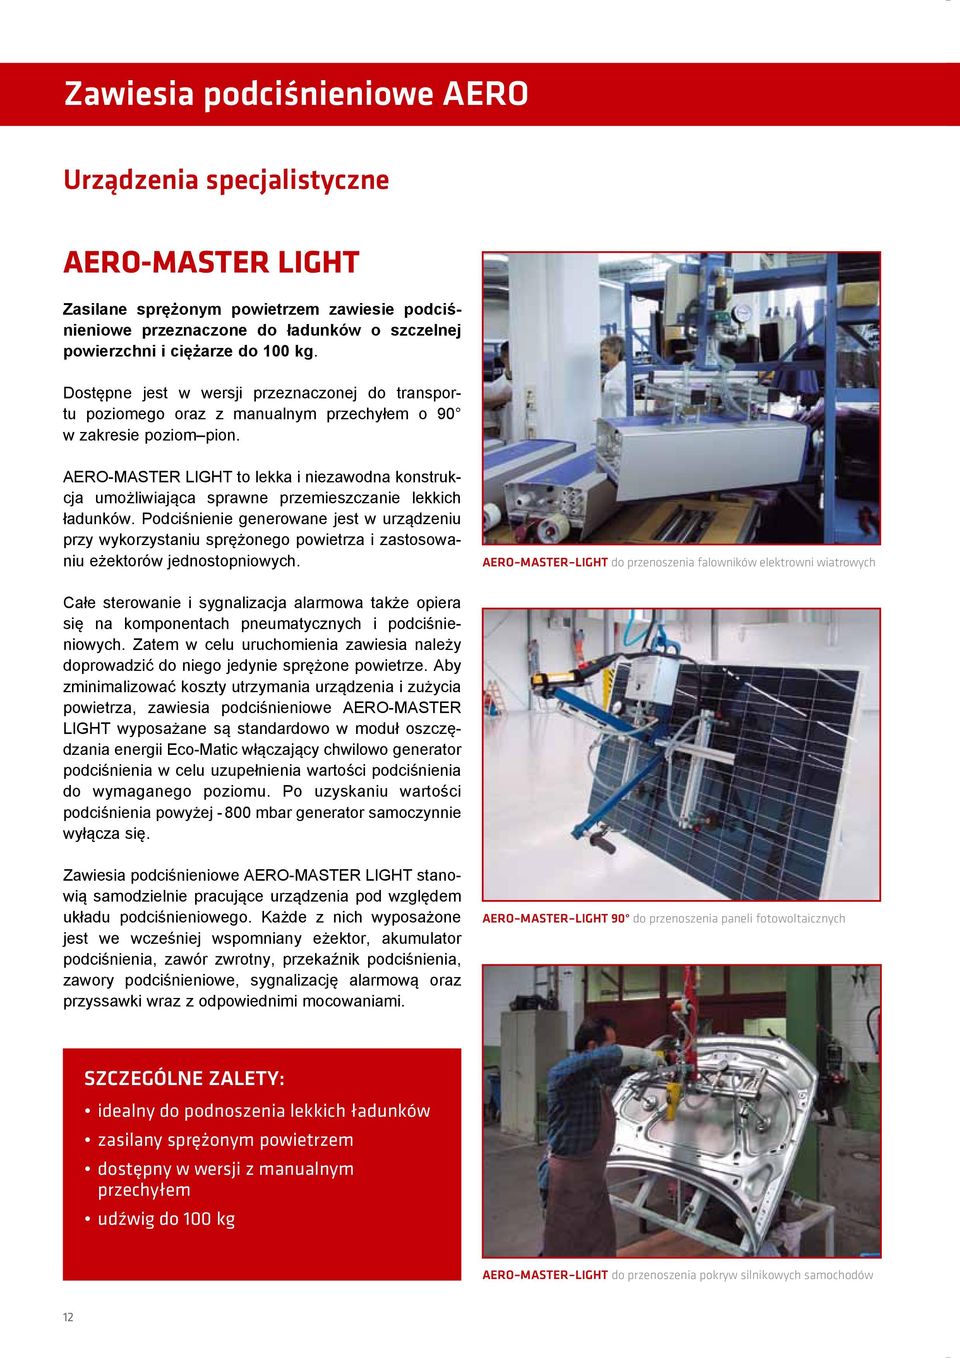 AERO-MASTER LIGHT to lekka i niezawodna konstrukcja umożliwiająca sprawne przemieszczanie lekkich ładunków.